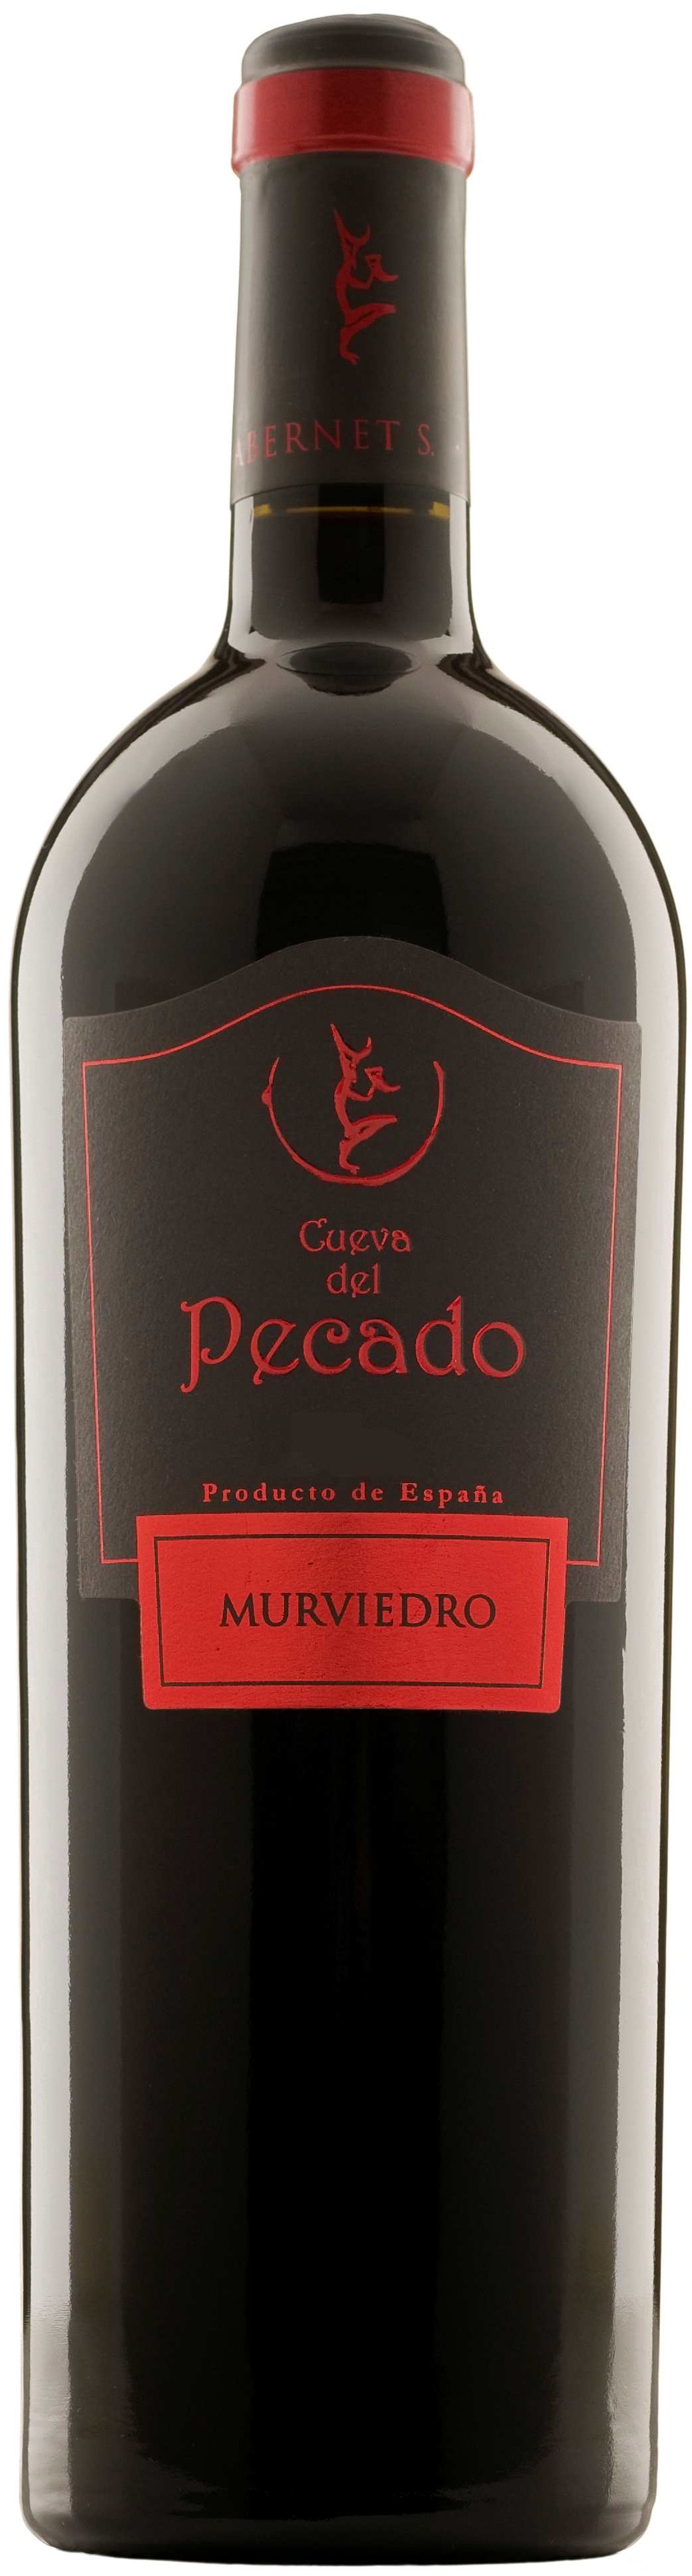 Bild von der Weinflasche Cueva del Pecado